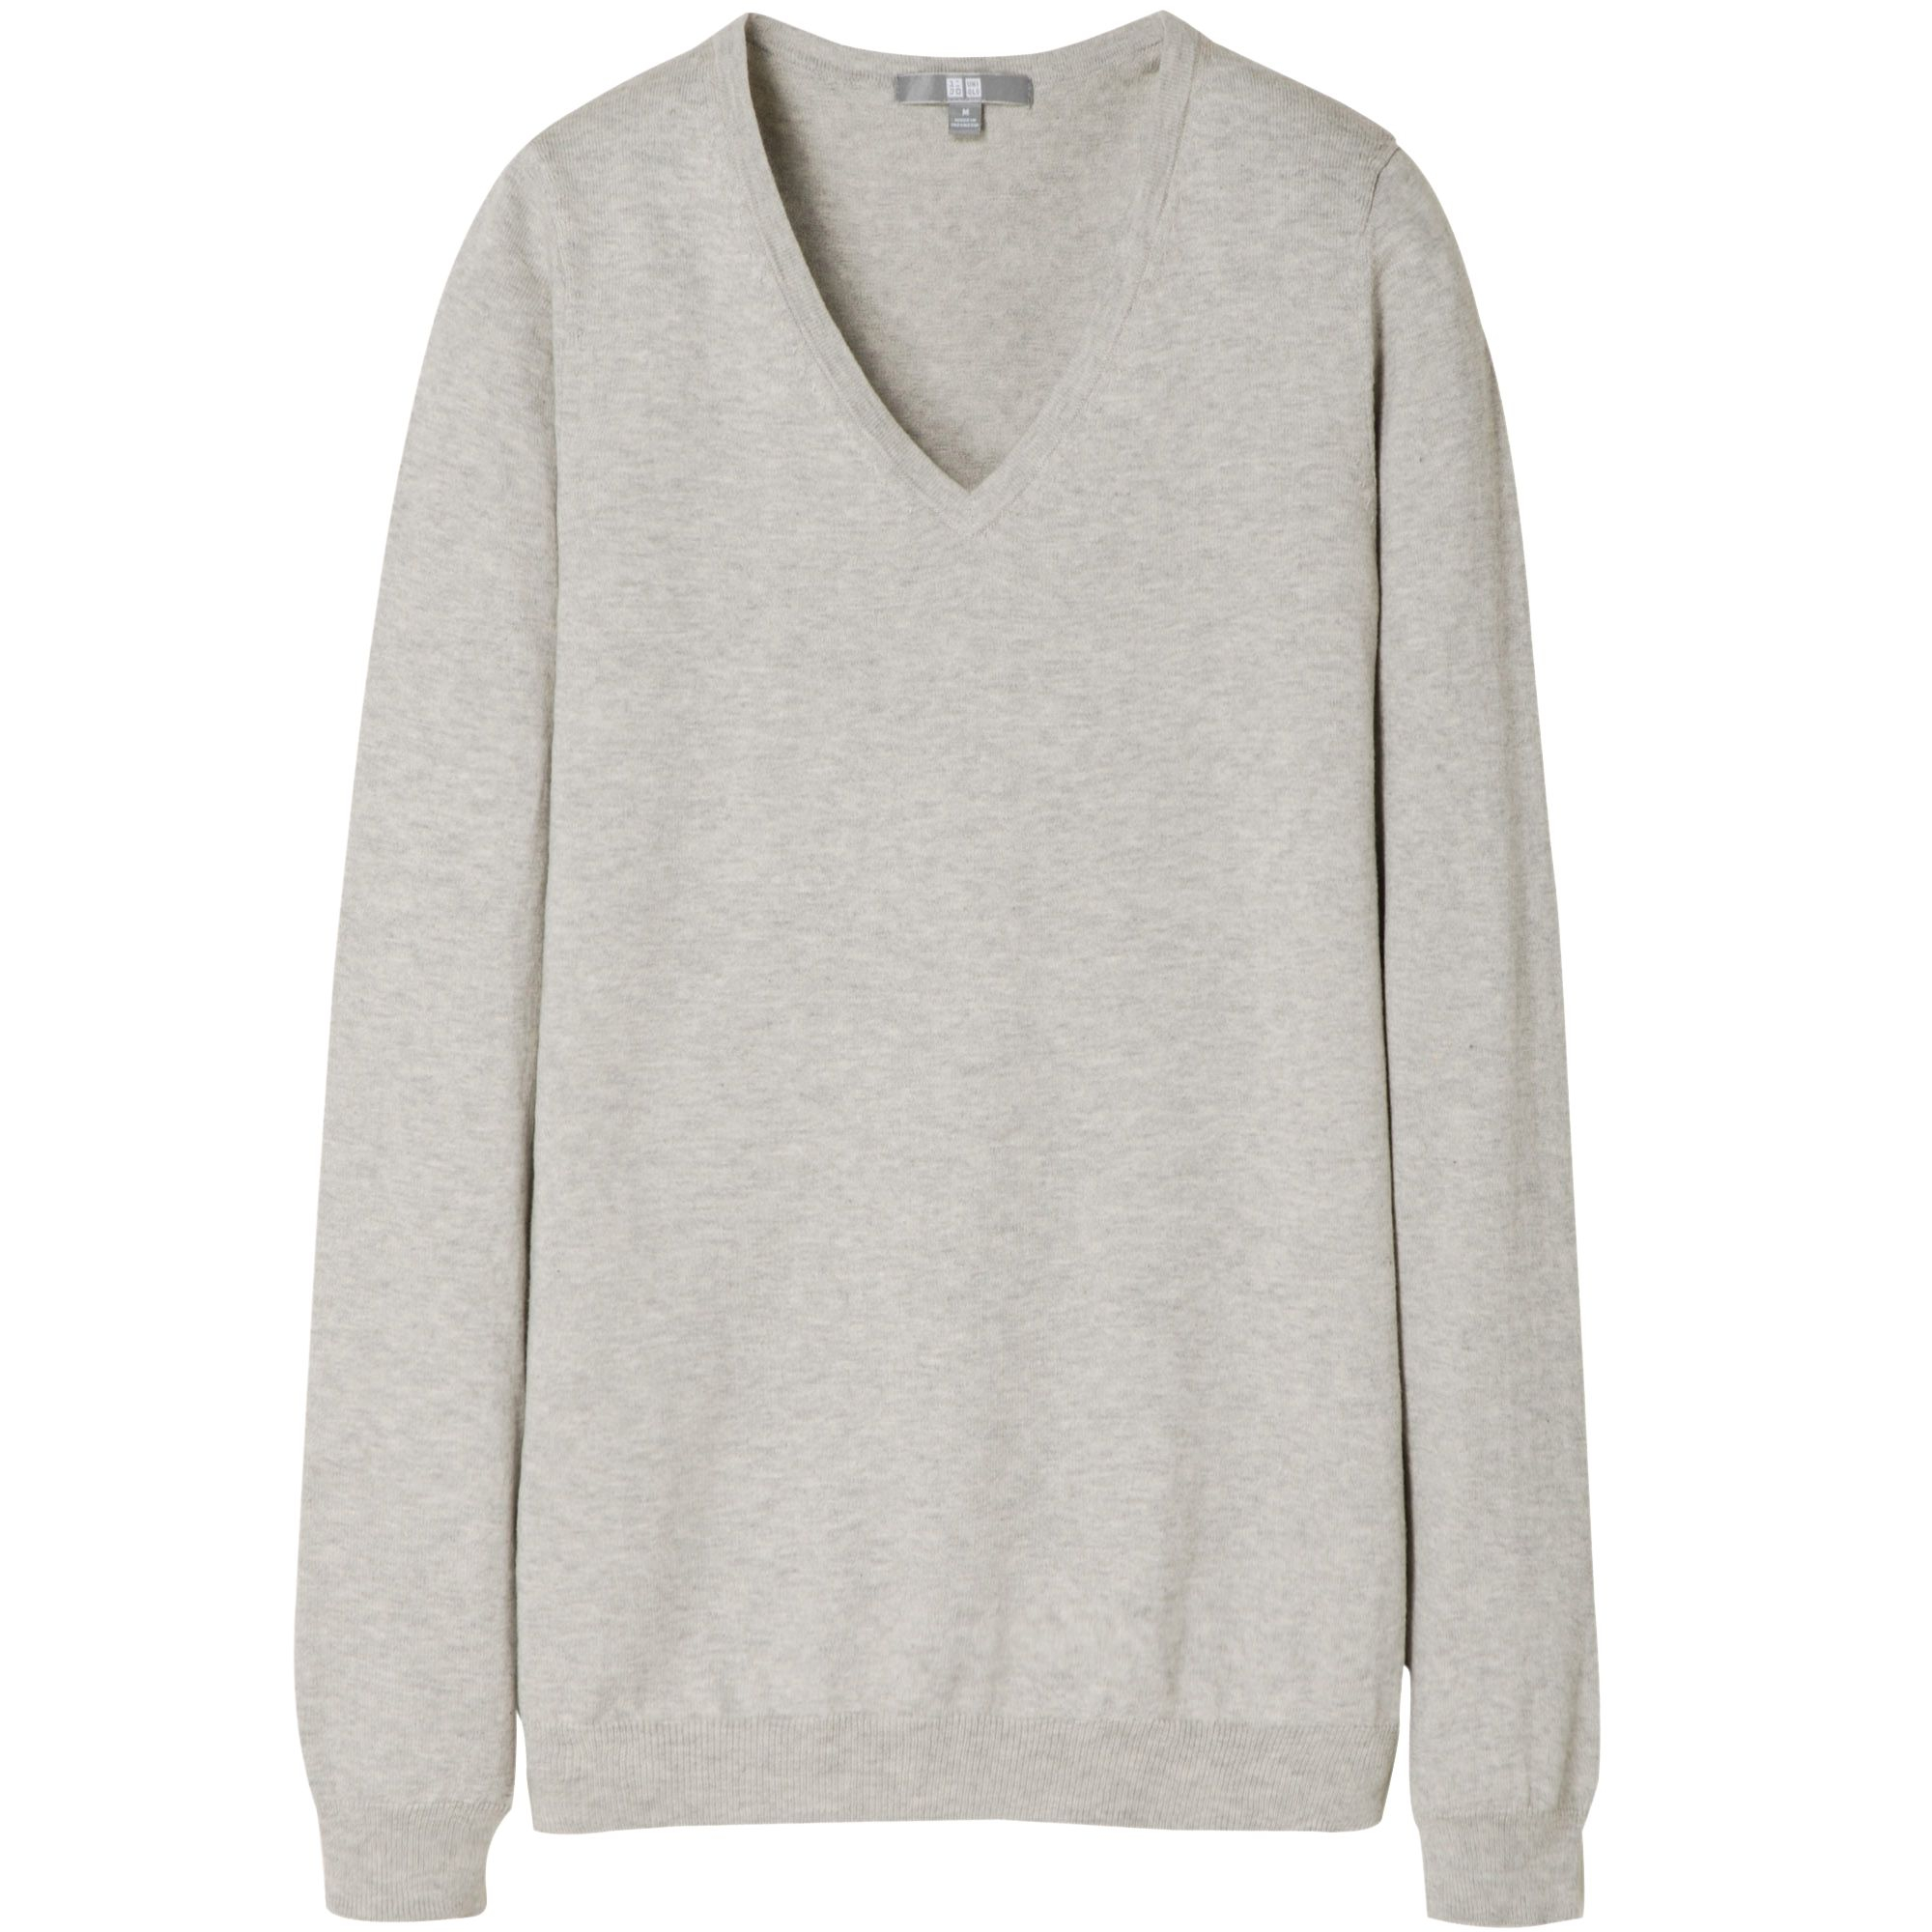 Uniqlo Cotton Cashmere V Neck Sweater in Gray | Lyst